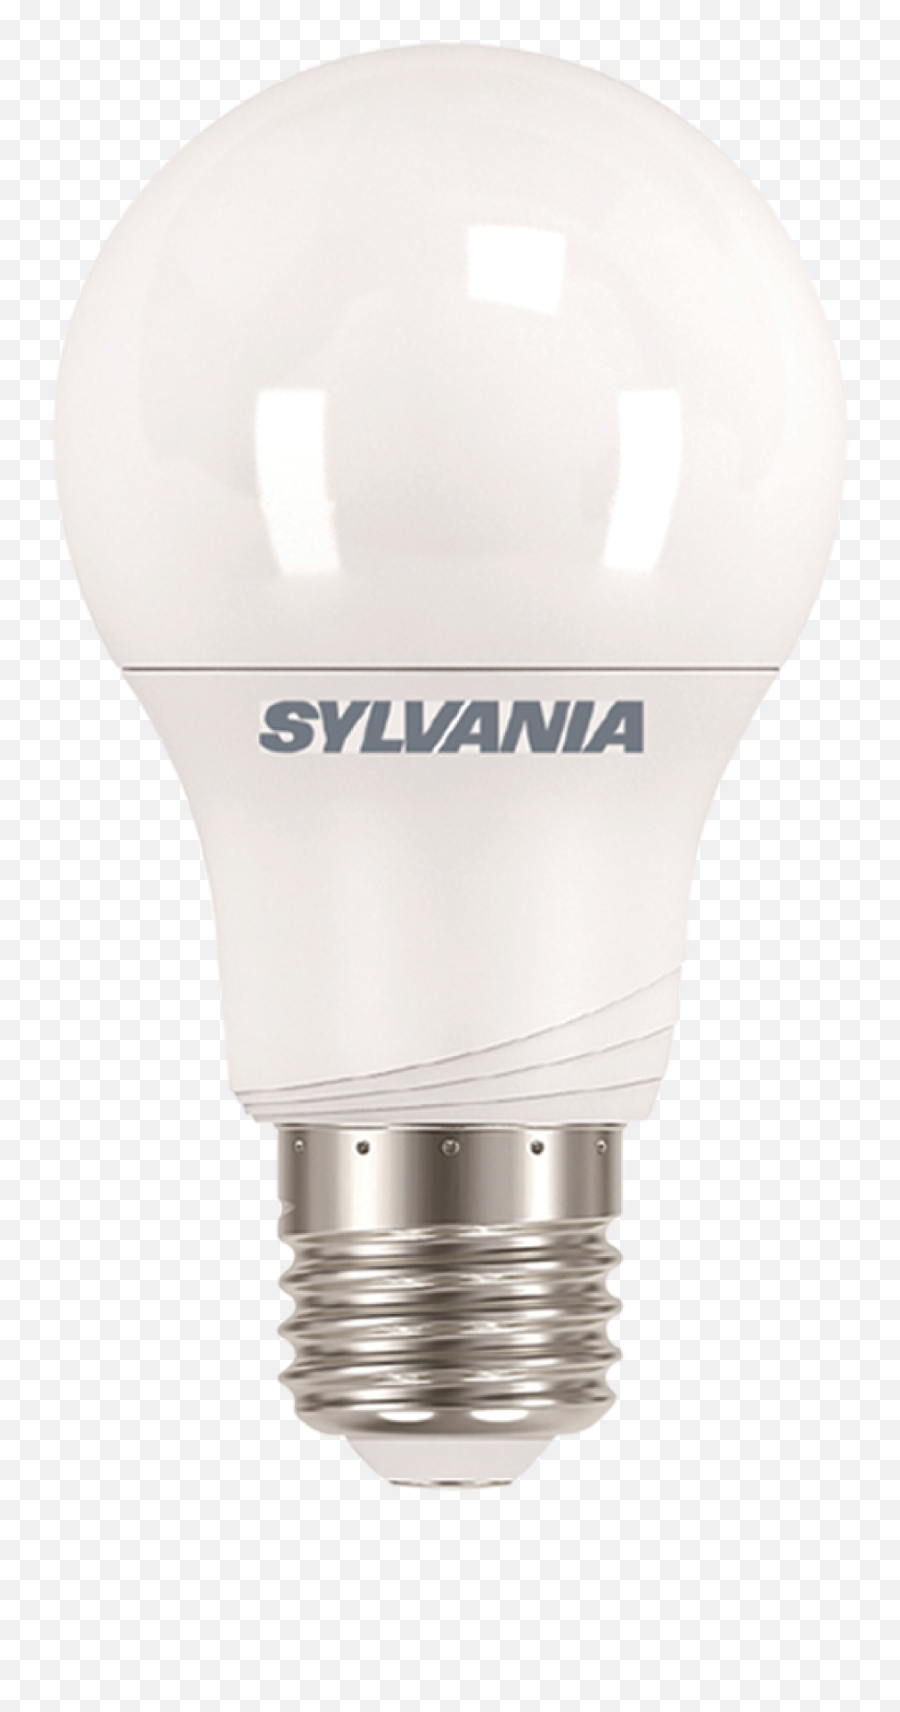 Download Hd Foco - Incandescent Light Bulb Transparent Png Sylvania,Light Bulb Transparent Png